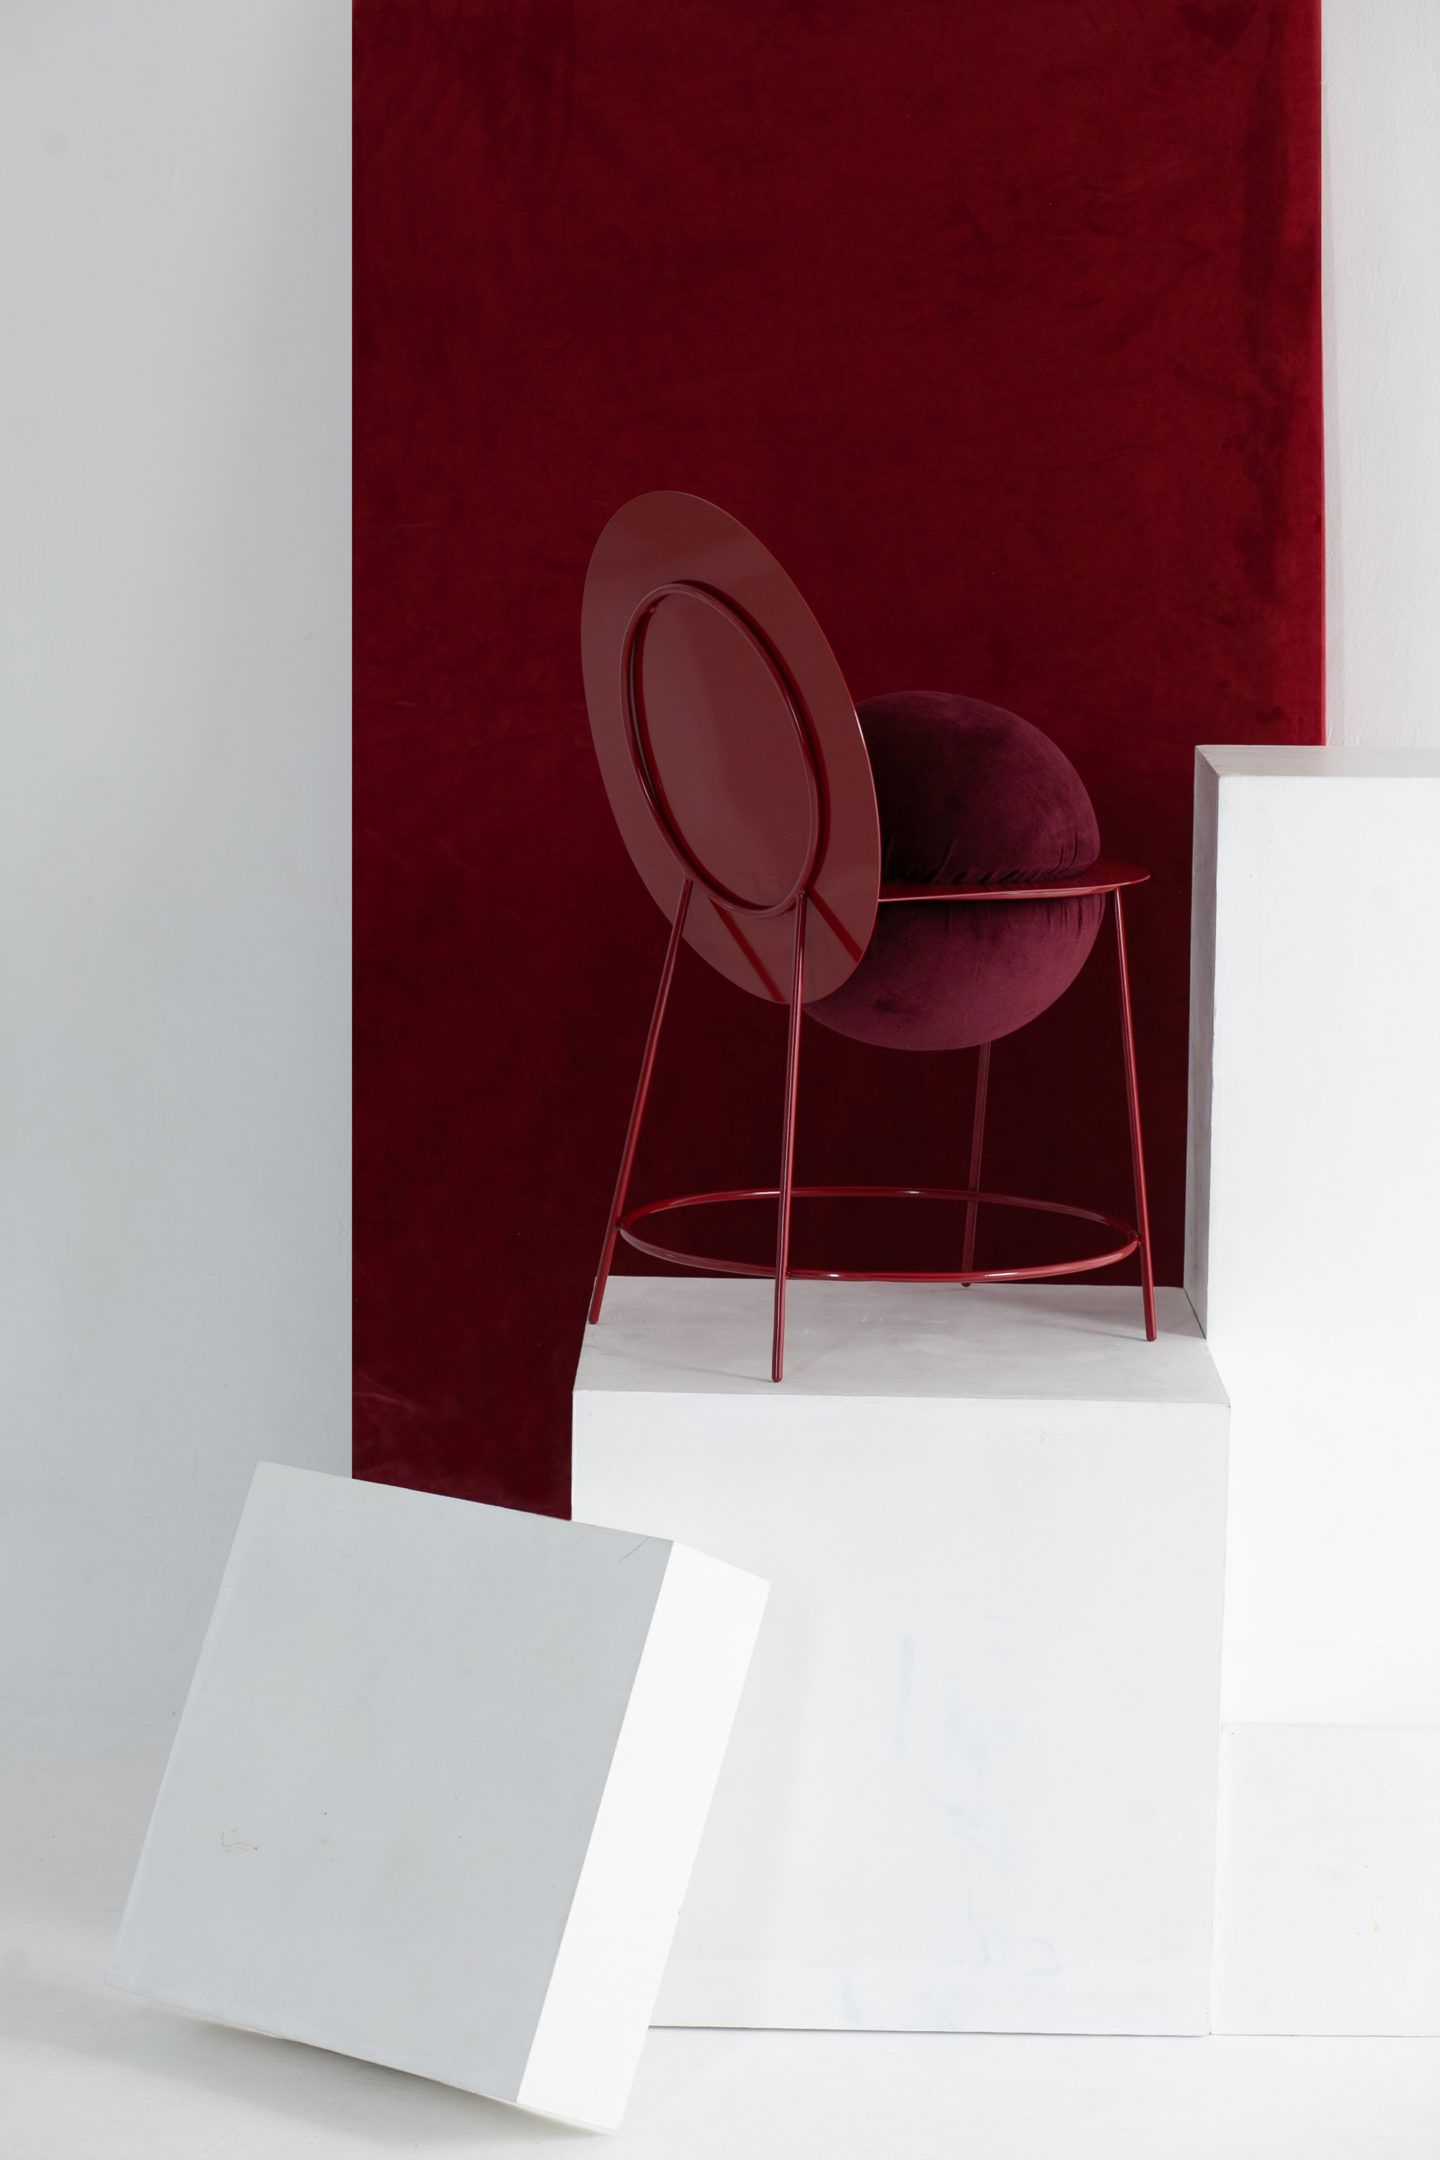 IGNANT-Design-Unusual-Chairs-3